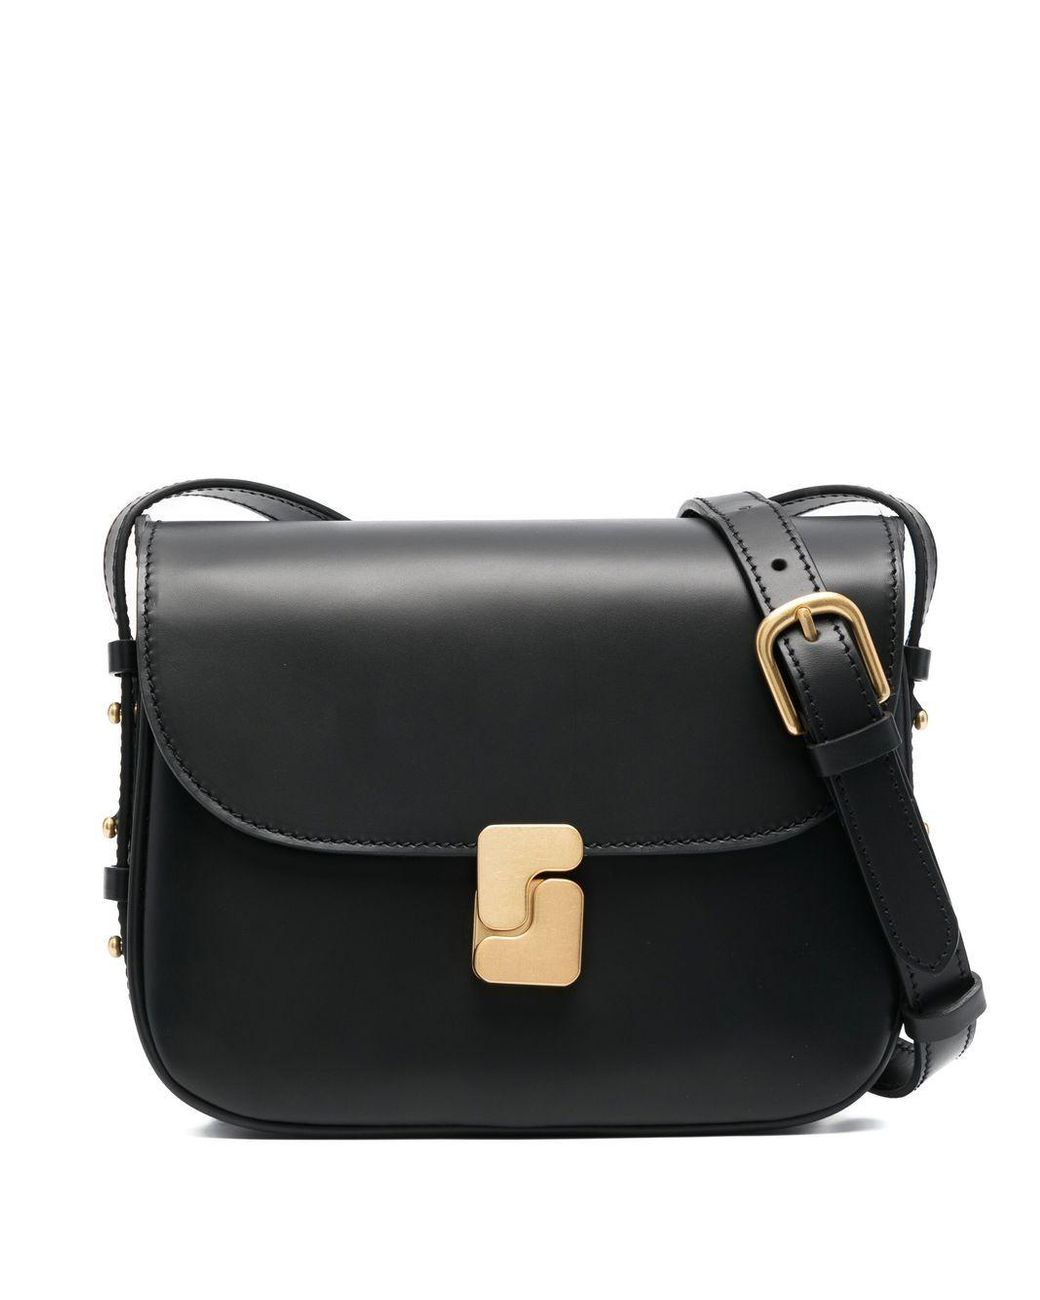 Soeur Leather Shoulder Bag in Black | Lyst